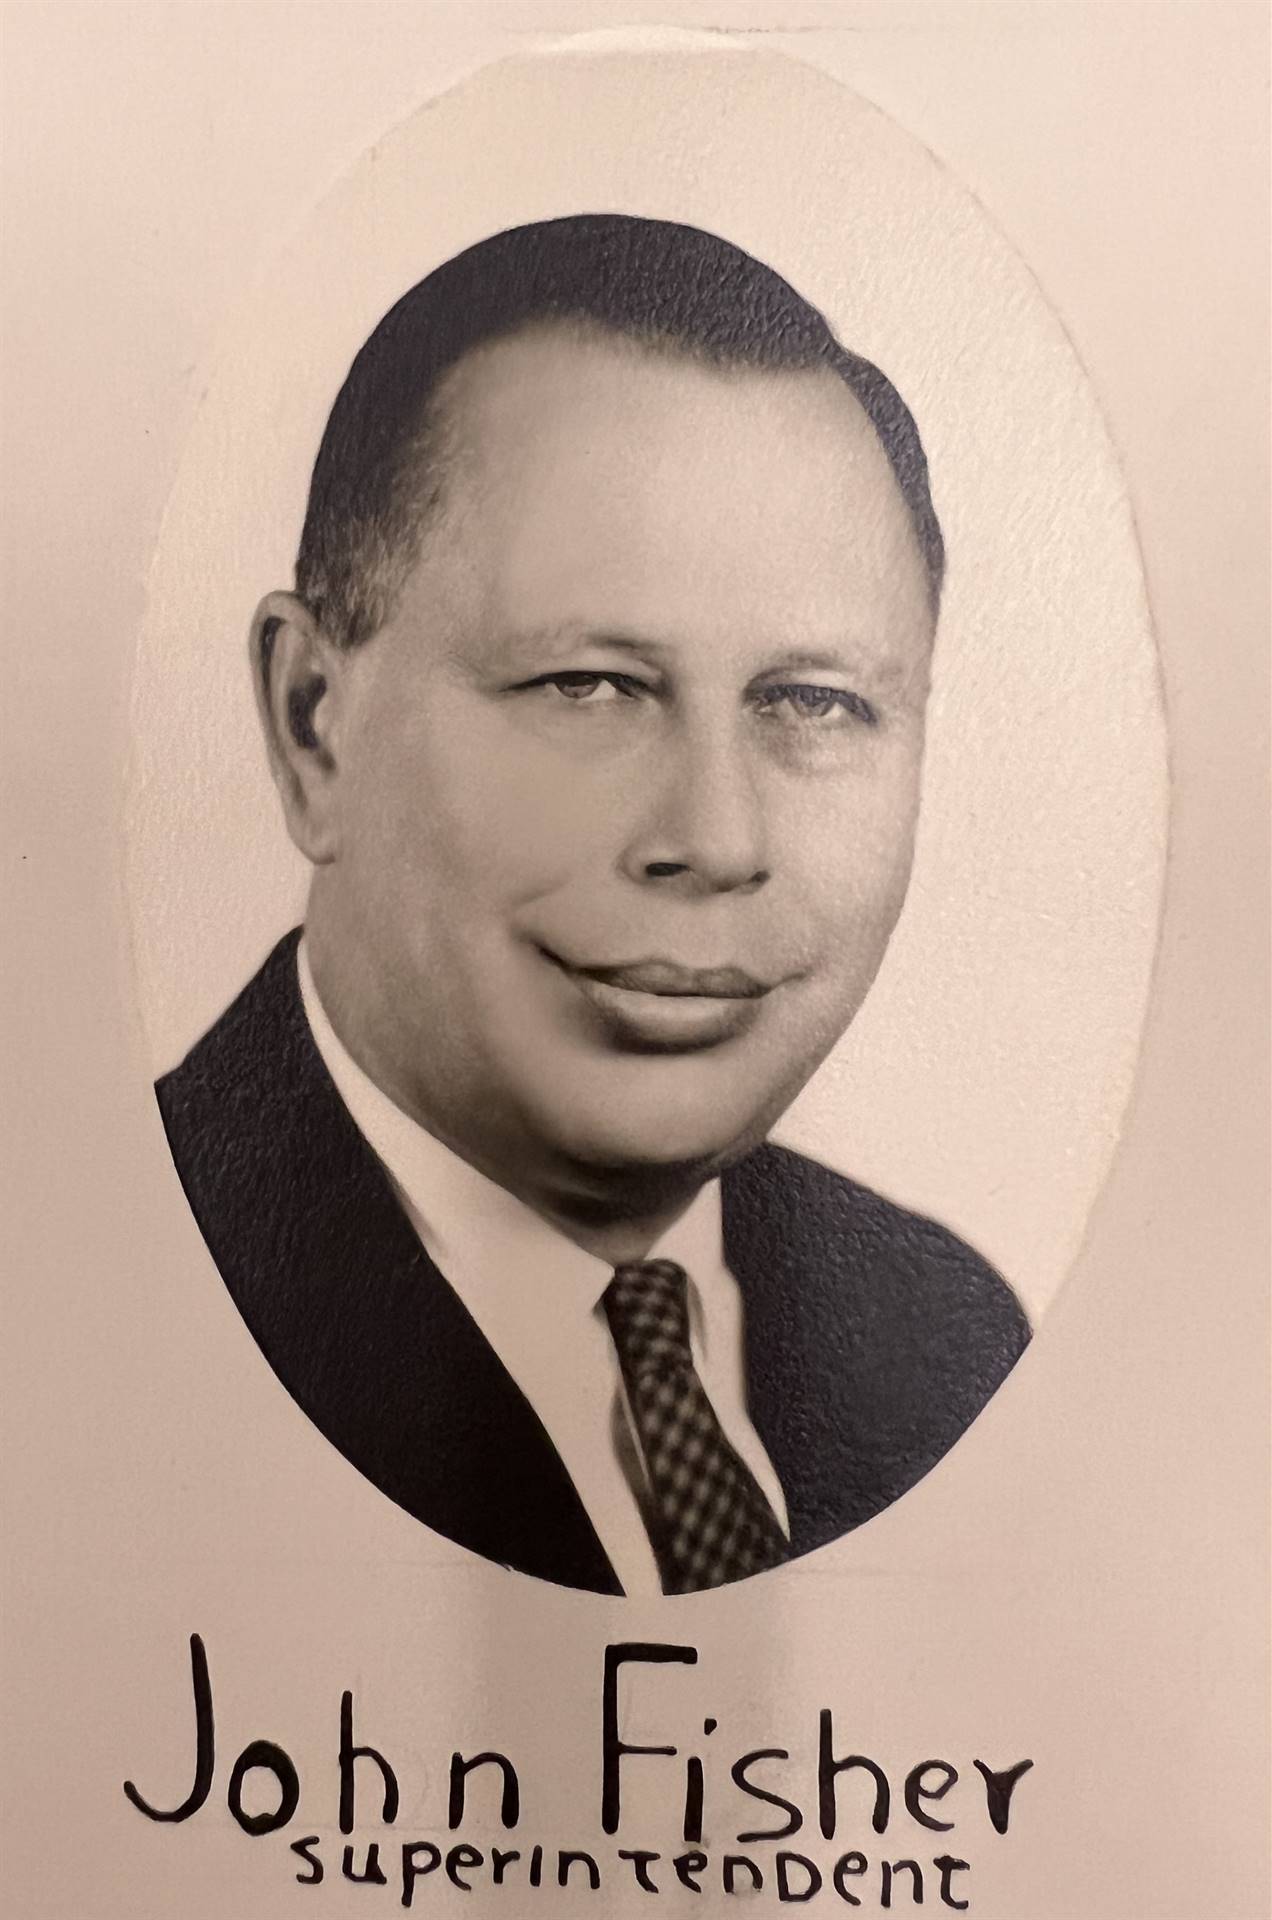 John Fisher (Superintendent)